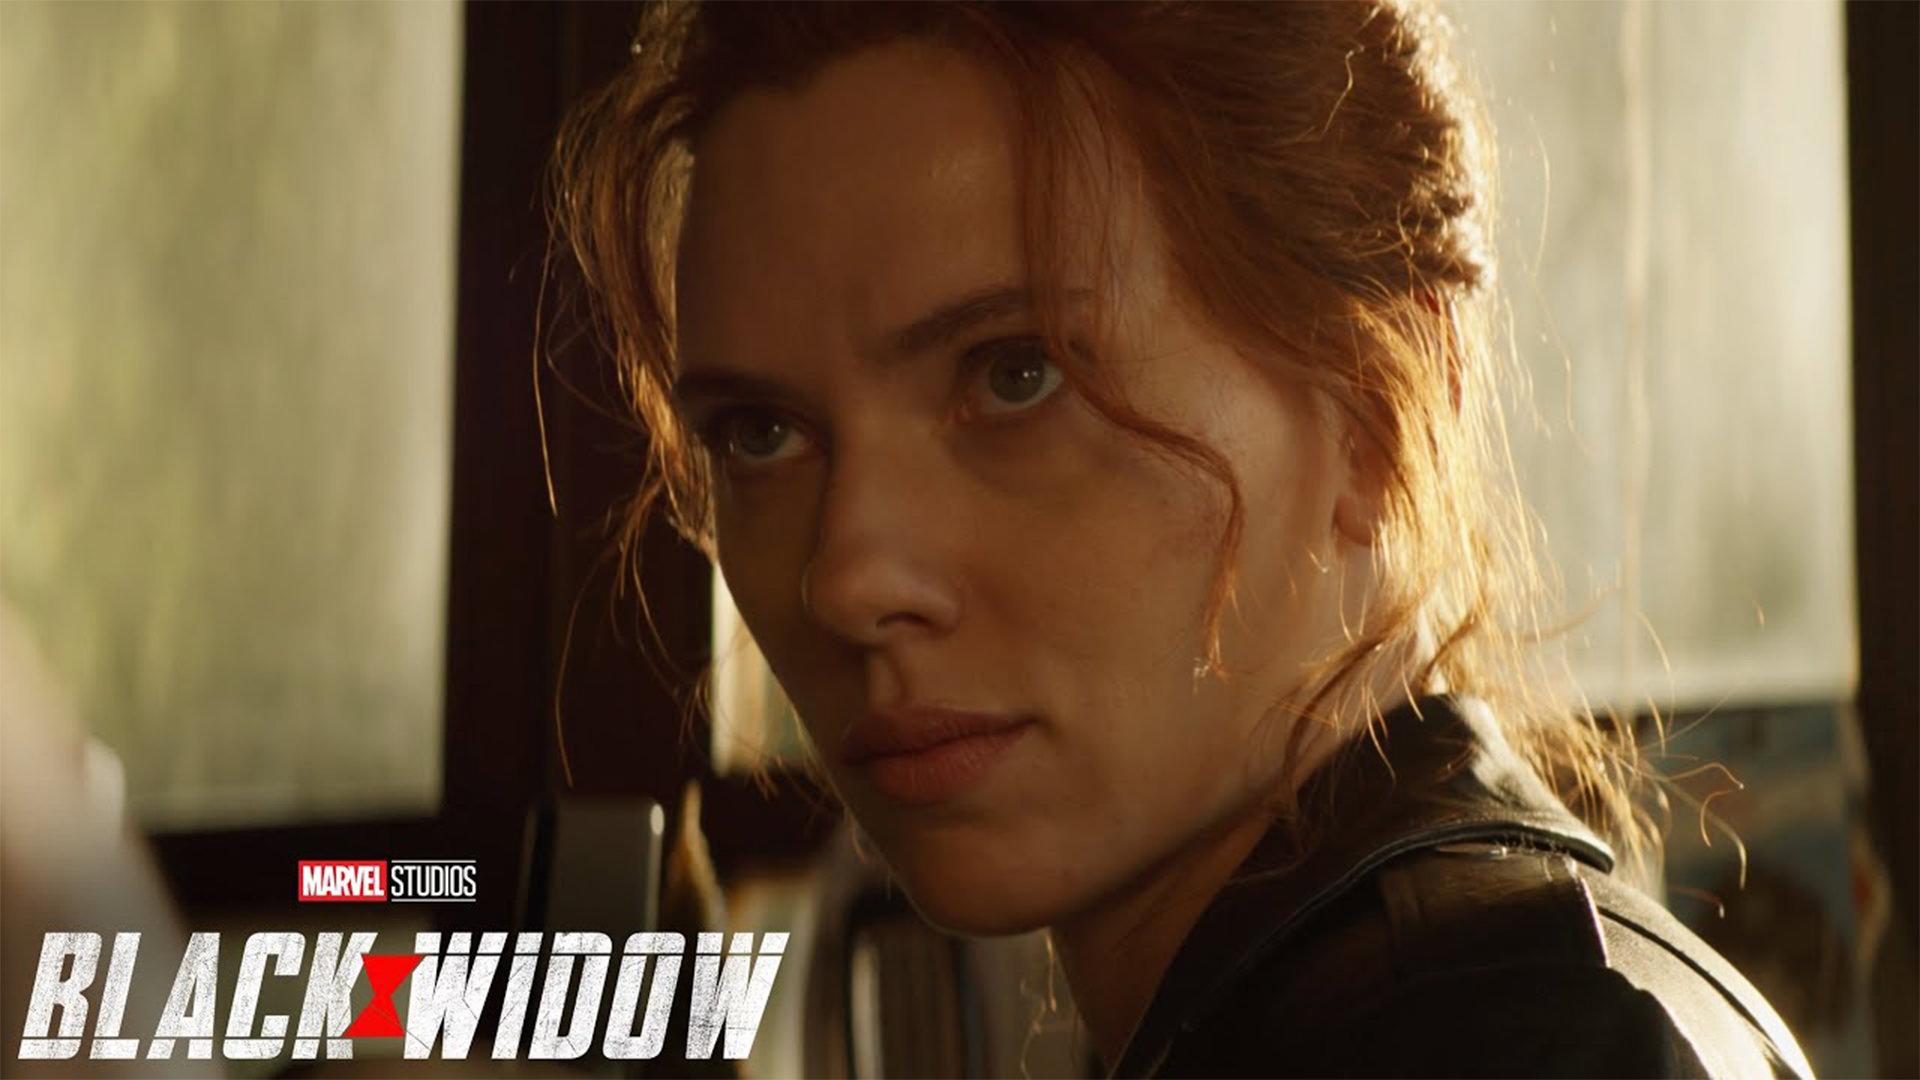 اسکارلت جوهانسون در نقش ناتاشا رومانف ملقب به بلک ویدو در فیلم Black Widow